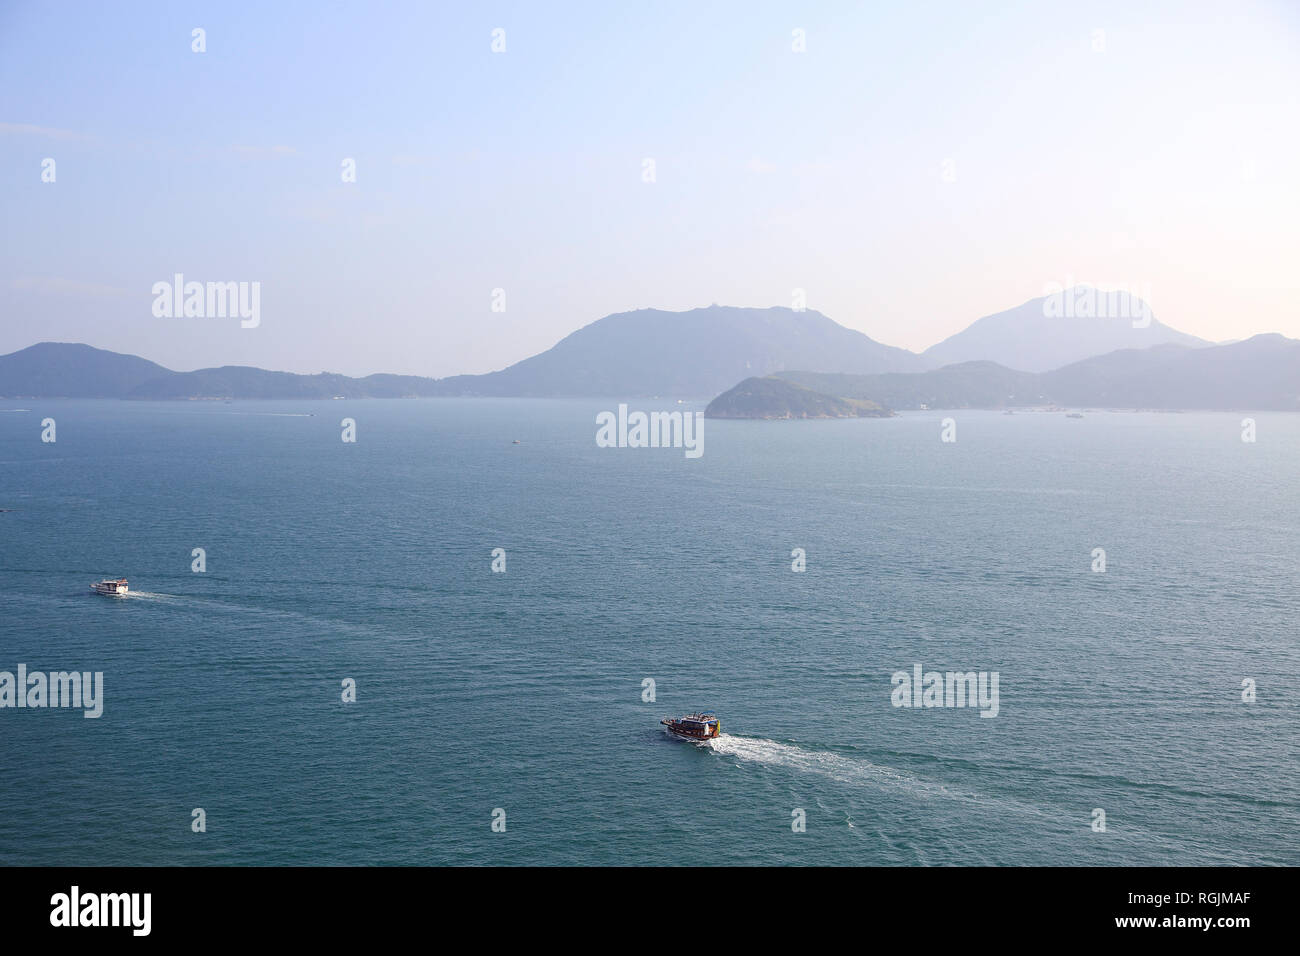 View of Outlying Islands, South China Sea from Pok Fu Lam, Hong Kong Island, Hong Kong, China, Asia Stock Photo